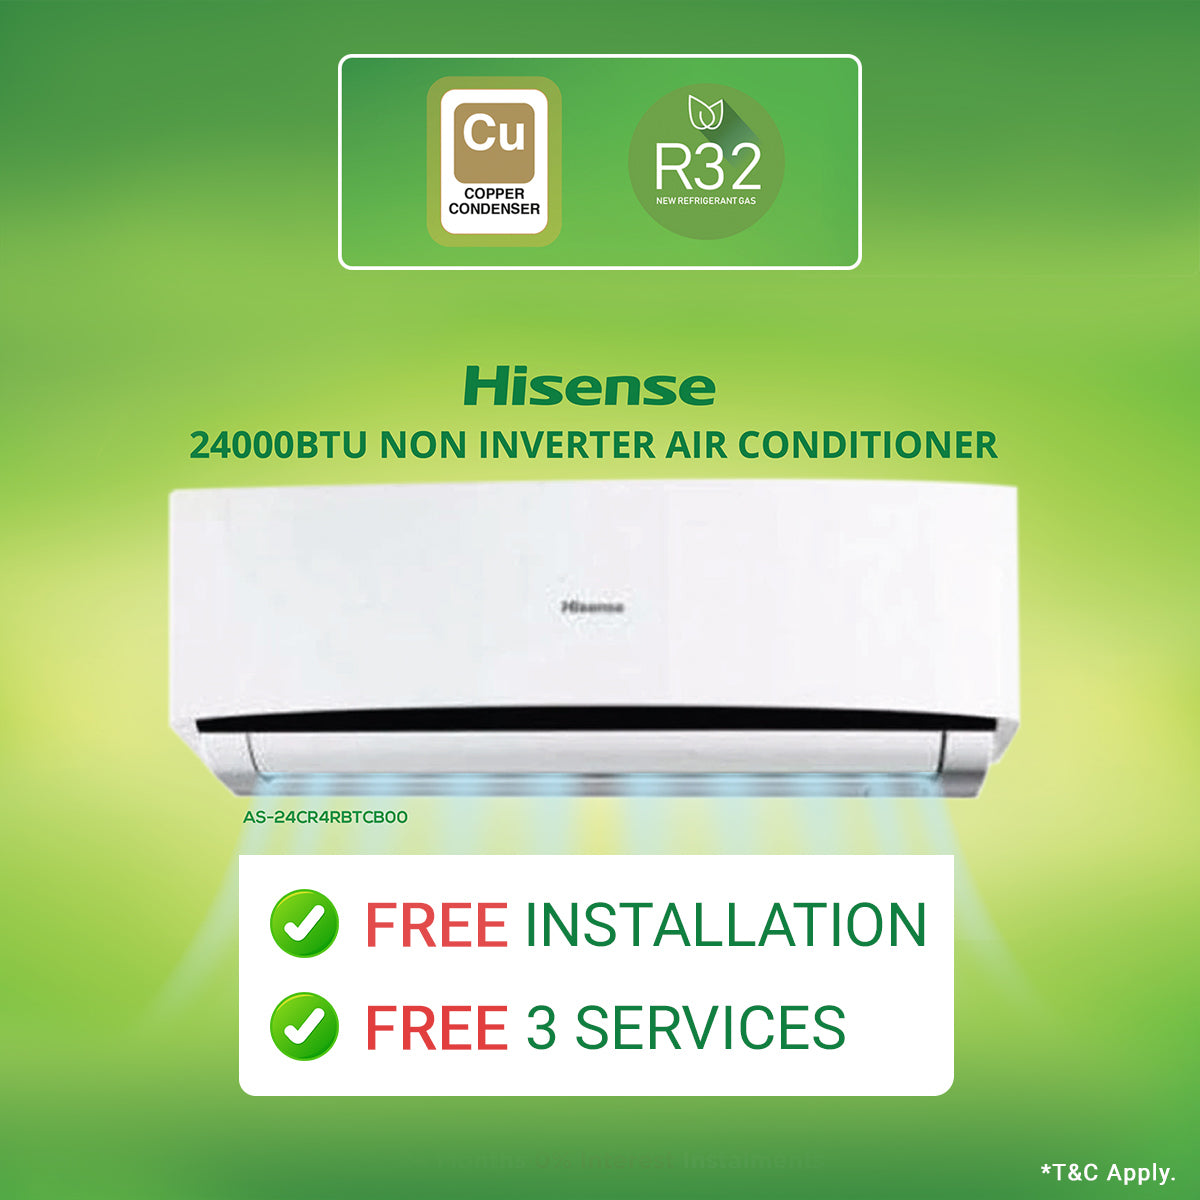 Hisense Split Type Air Conditioner 24000btu Non Inverter 3733